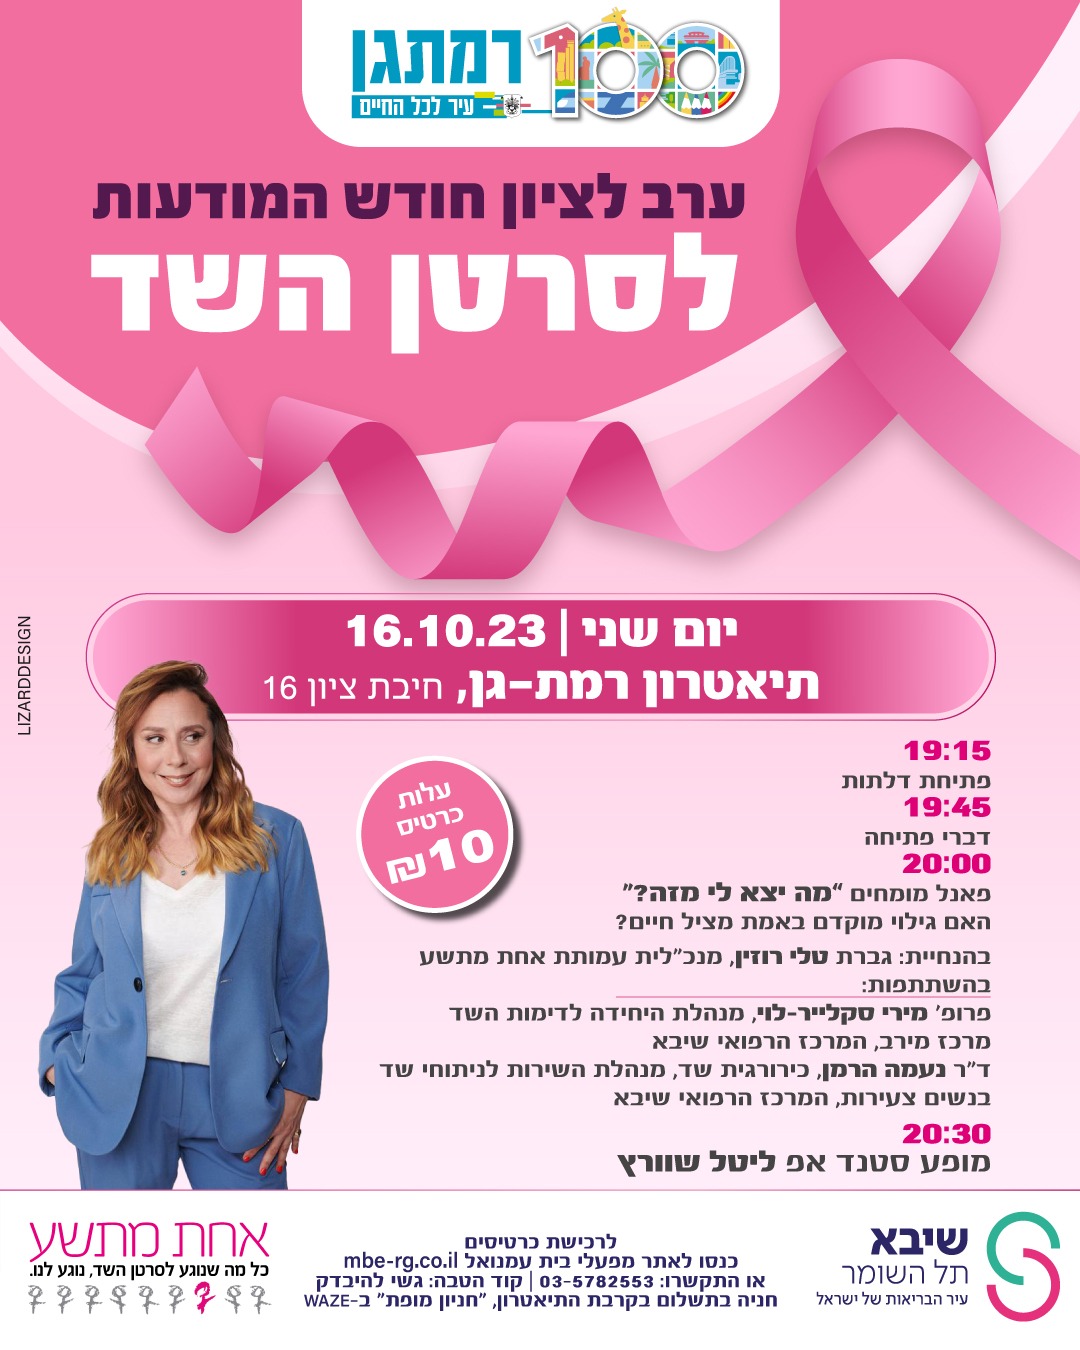 פוסט פרסומי ליום ליום המודעות לסרטן השד